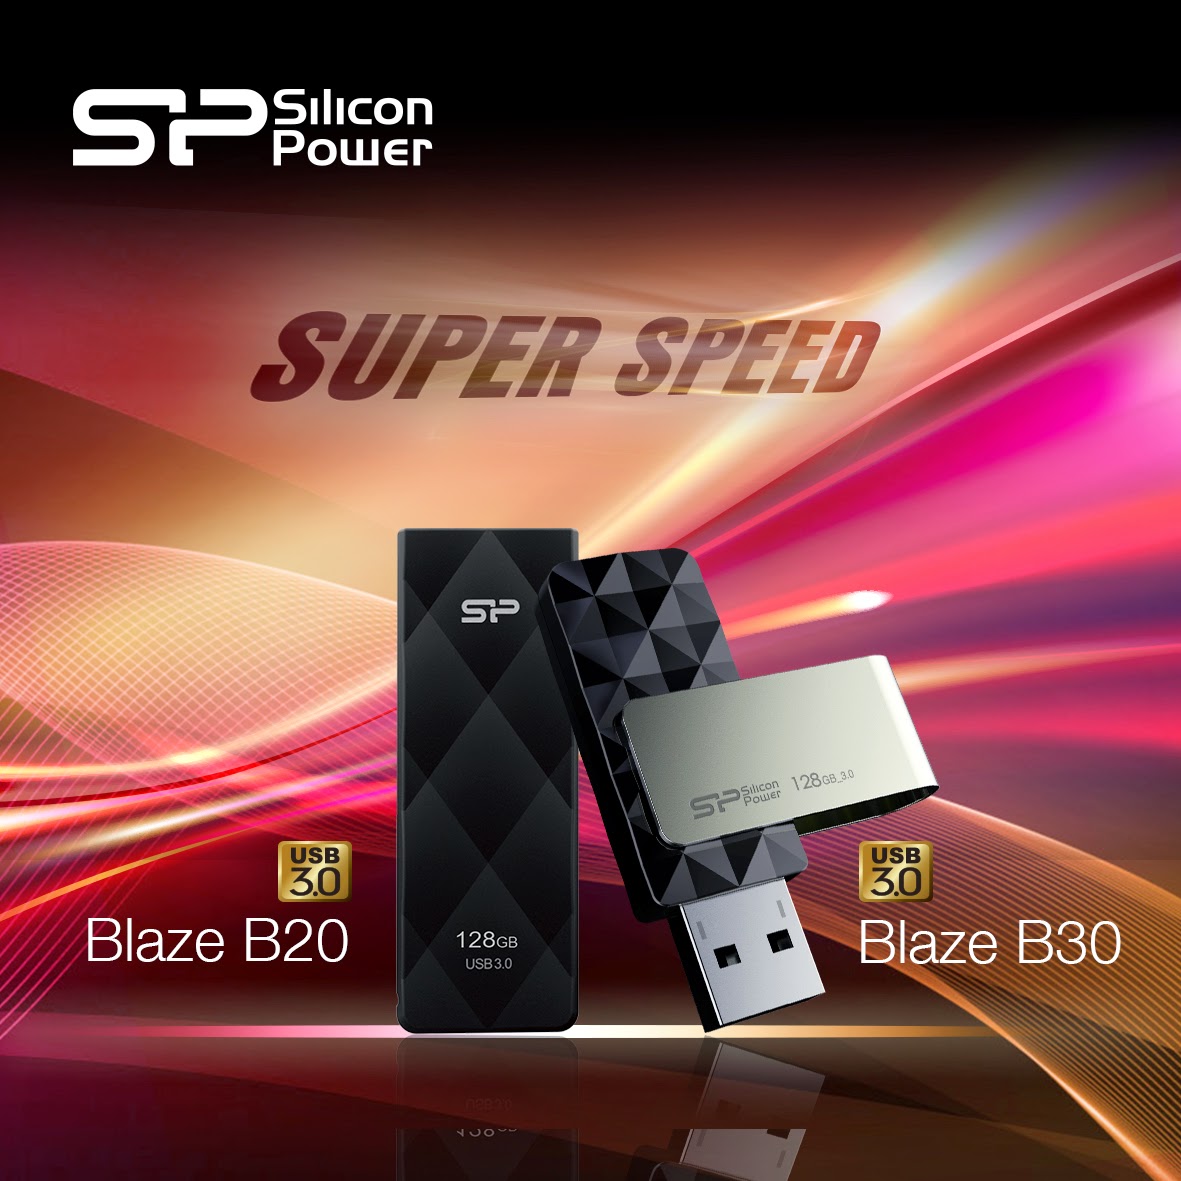 SP Blaze B20 and B30